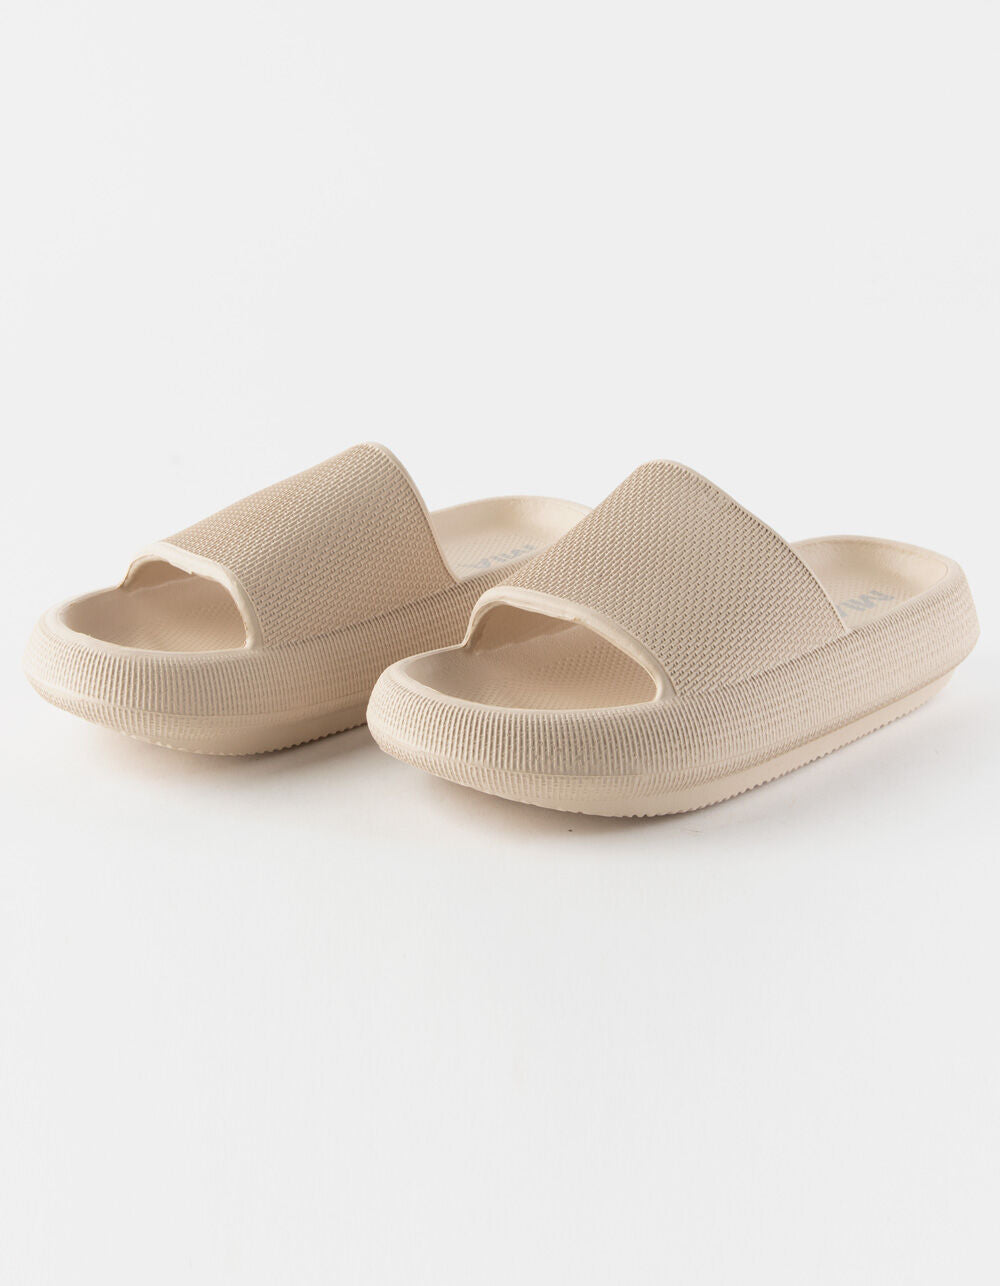 MIA Lexa Slide Sandals - Sand